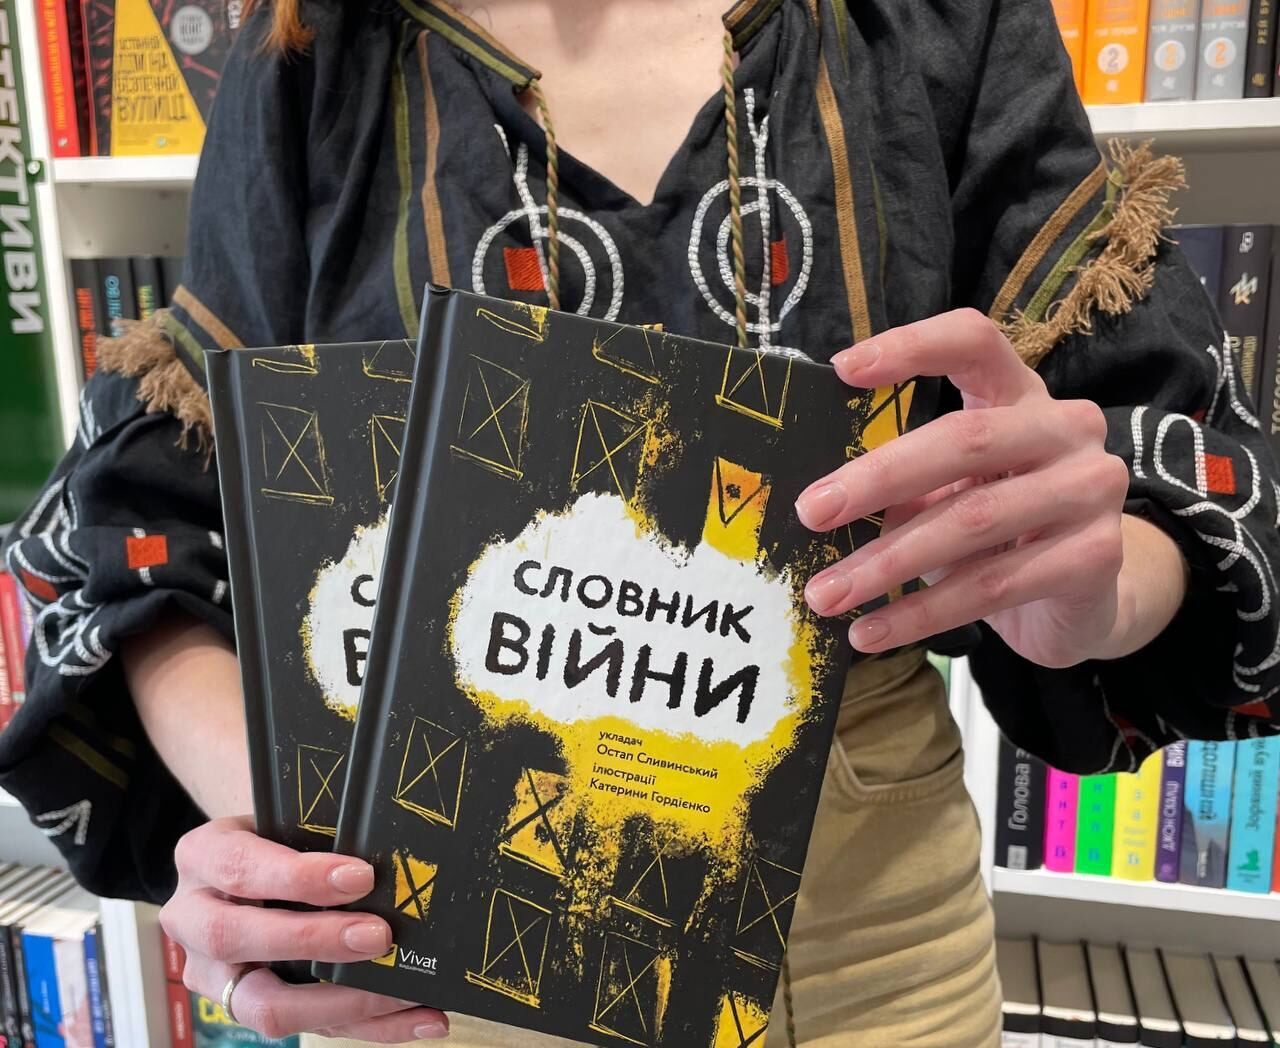 "Словник війни": книжка про кожного українця і для кожного українця